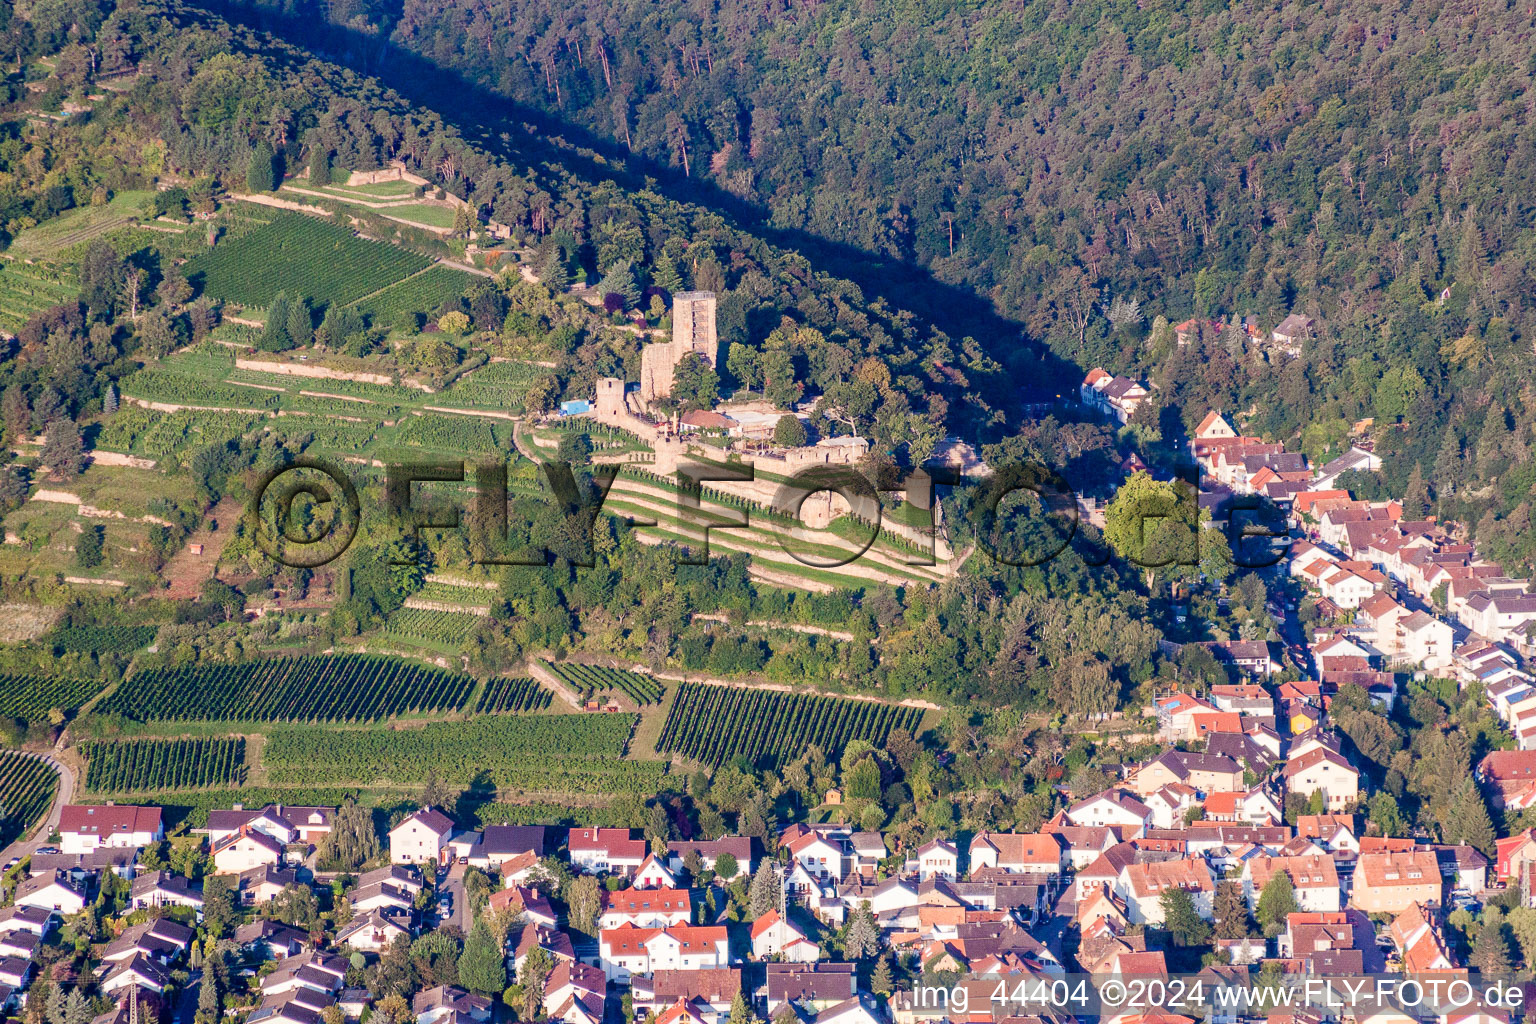 Luftbild von Ruine und Mauerreste der ehemaligen Burganlage Wachtenburg (Ruine "Burg Wachenheim") in Wachenheim an der Weinstraße im Bundesland Rheinland-Pfalz, Deutschland